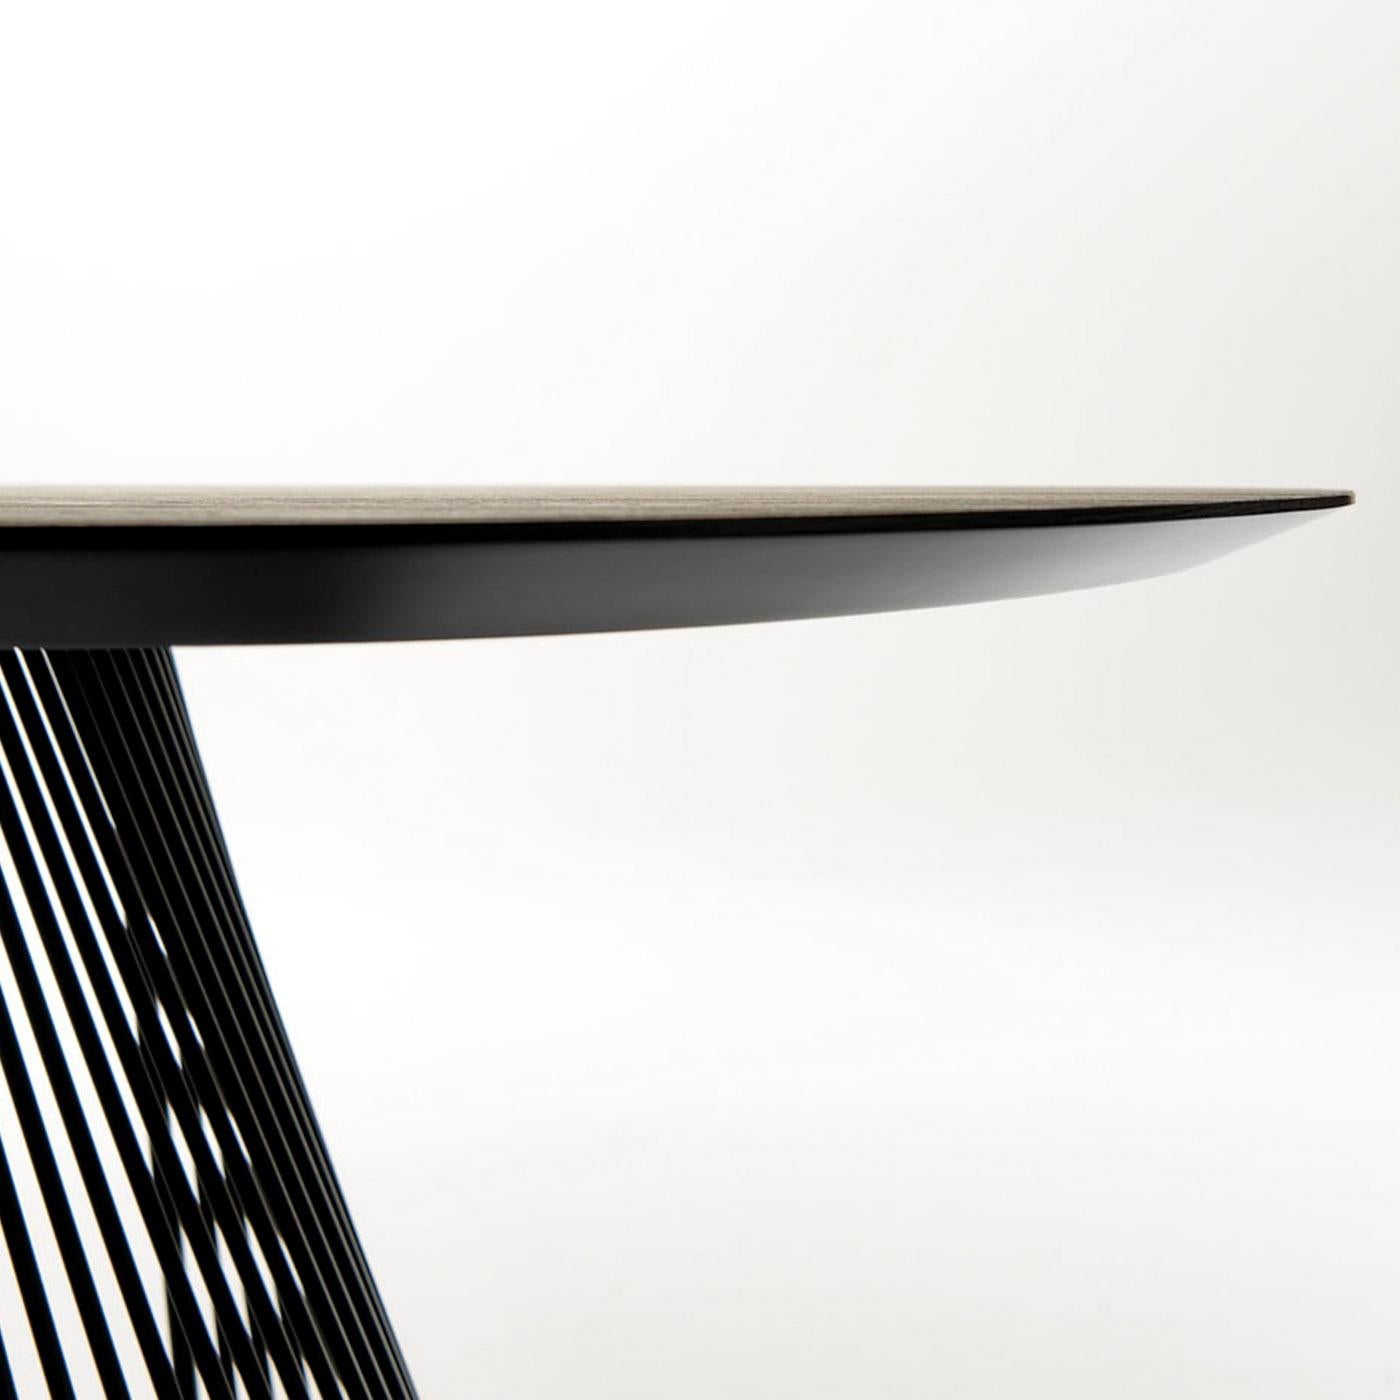 Cette table sculpturale affiche une silhouette d'un dynamisme exceptionnel qui ne passera pas inaperçue. Le plateau rectangulaire fini avec du durmast canadien et marqué par des bords biseautés, présente des angles arrondis qui s'harmonisent avec